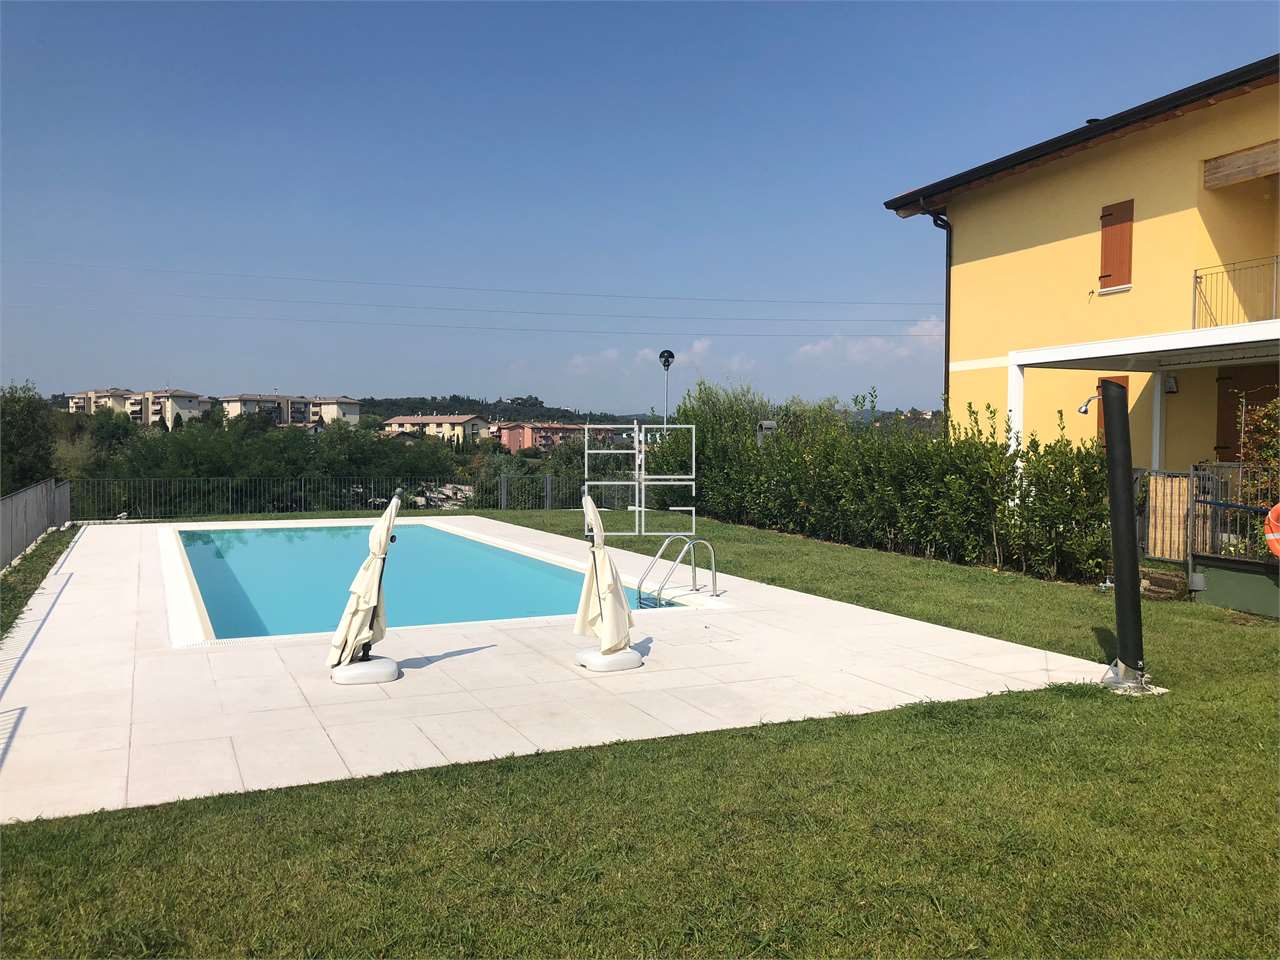 Apartment in a farmhouse with swimming pool in Desenzano del Garda